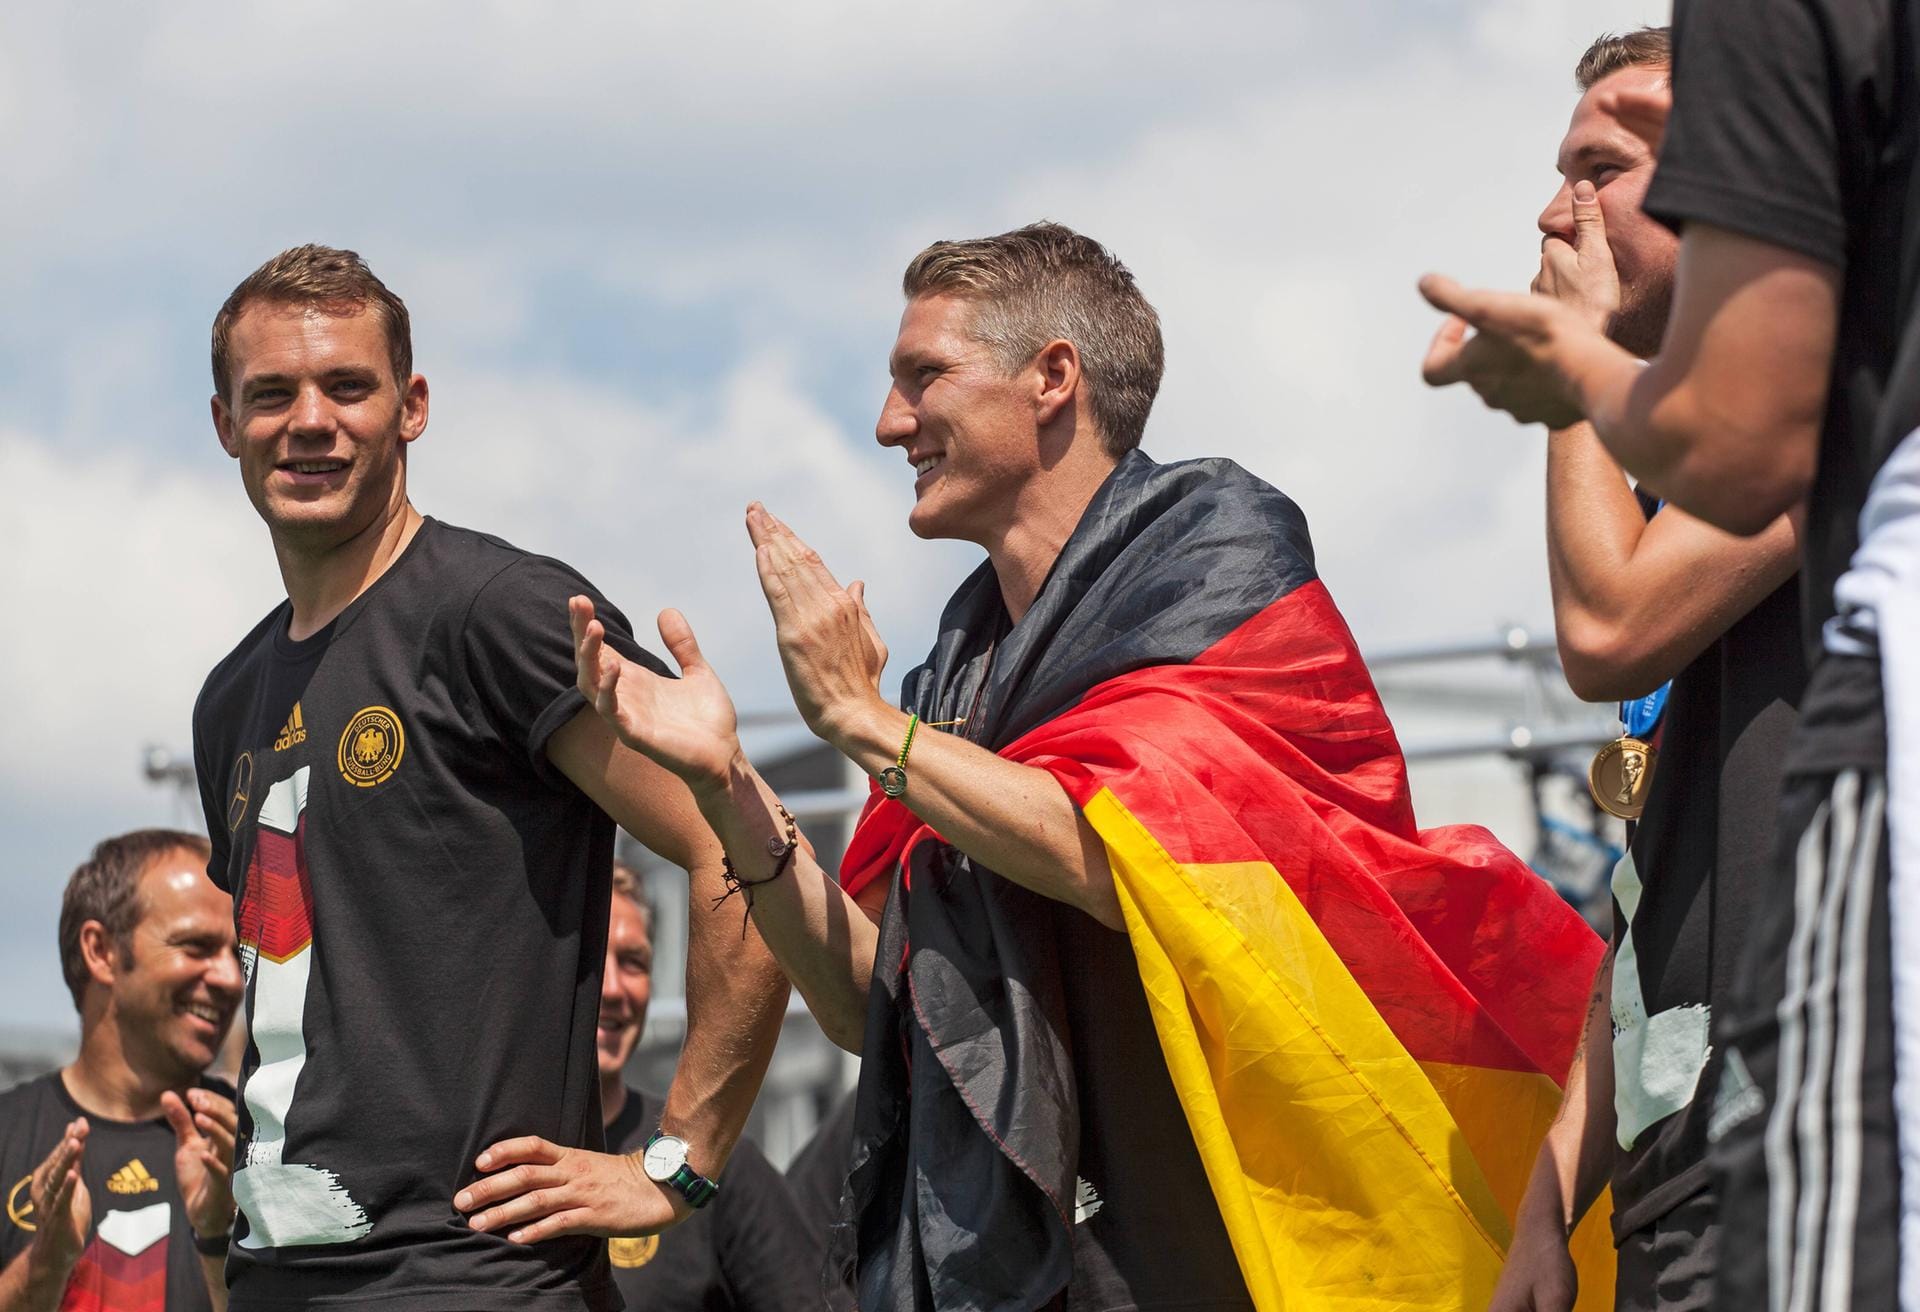 Bastian Schweinsteiger ist bald Fußball-Rentner, doch was machen seine 22 Kollegen, die mit ihm den WM-Titel 2014 holten, heute? Der Überblick.